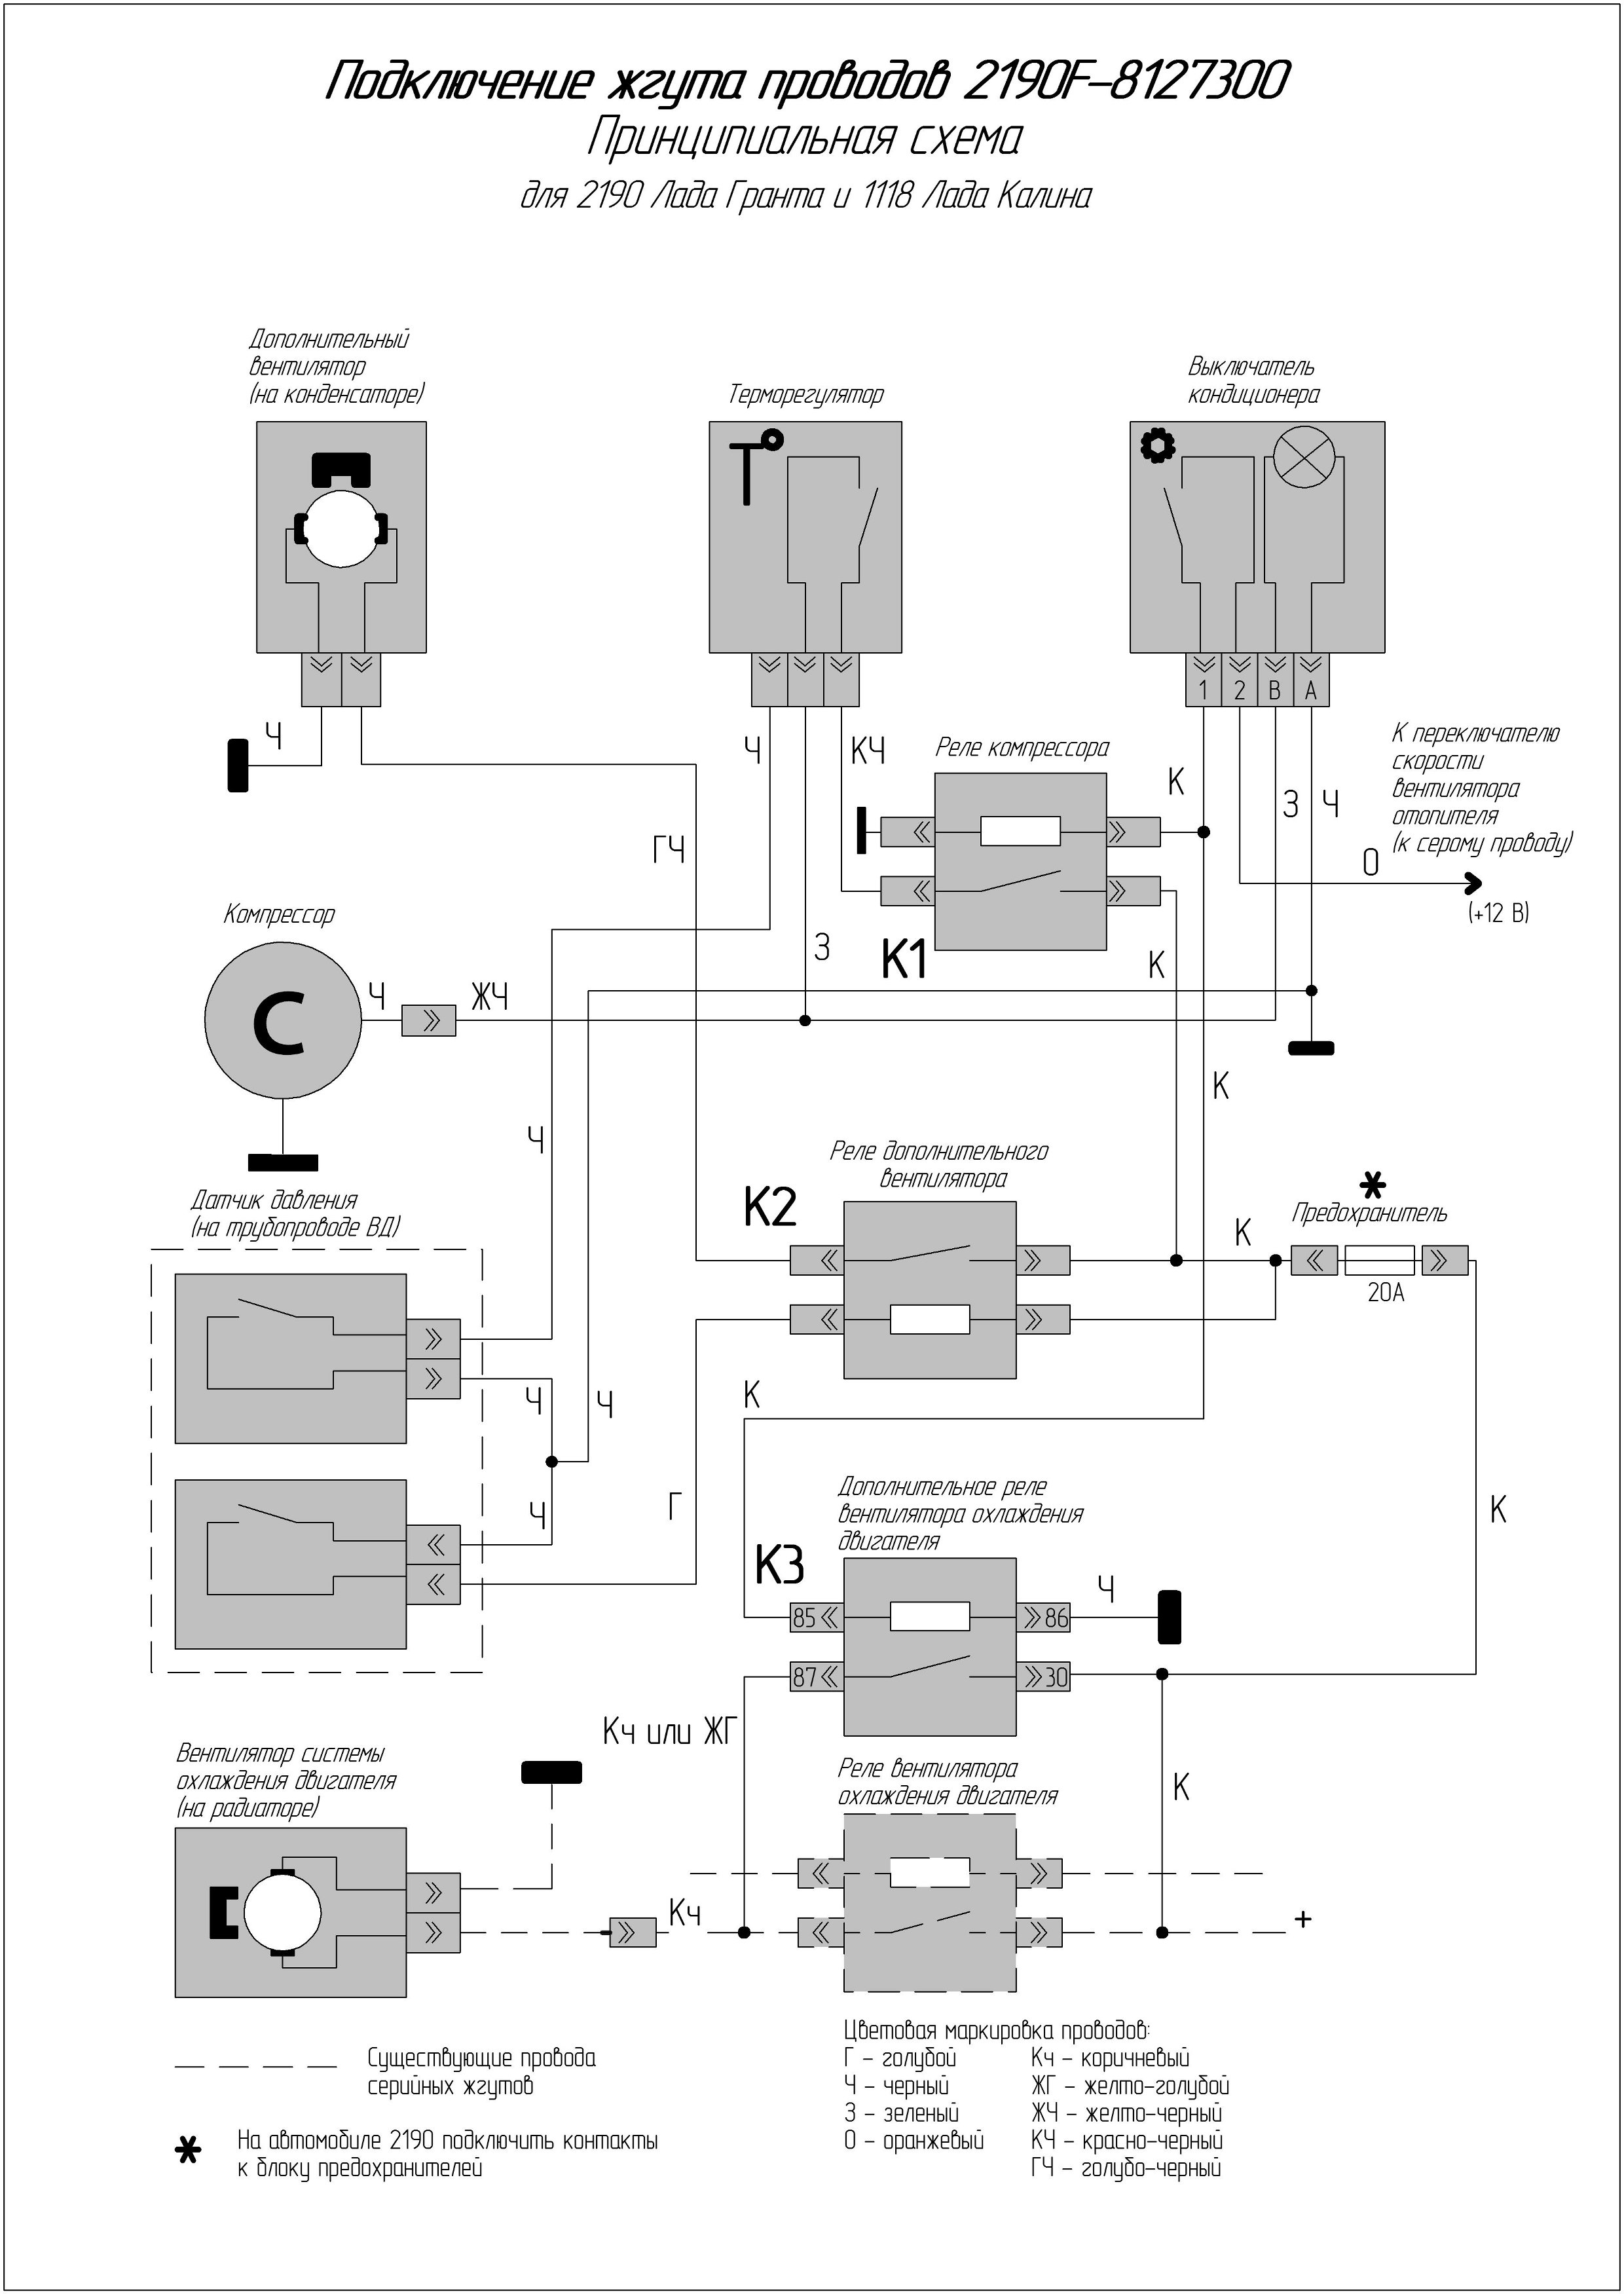 Установка кондиционера на Lada 4x4 (инструкция, рекомендации)